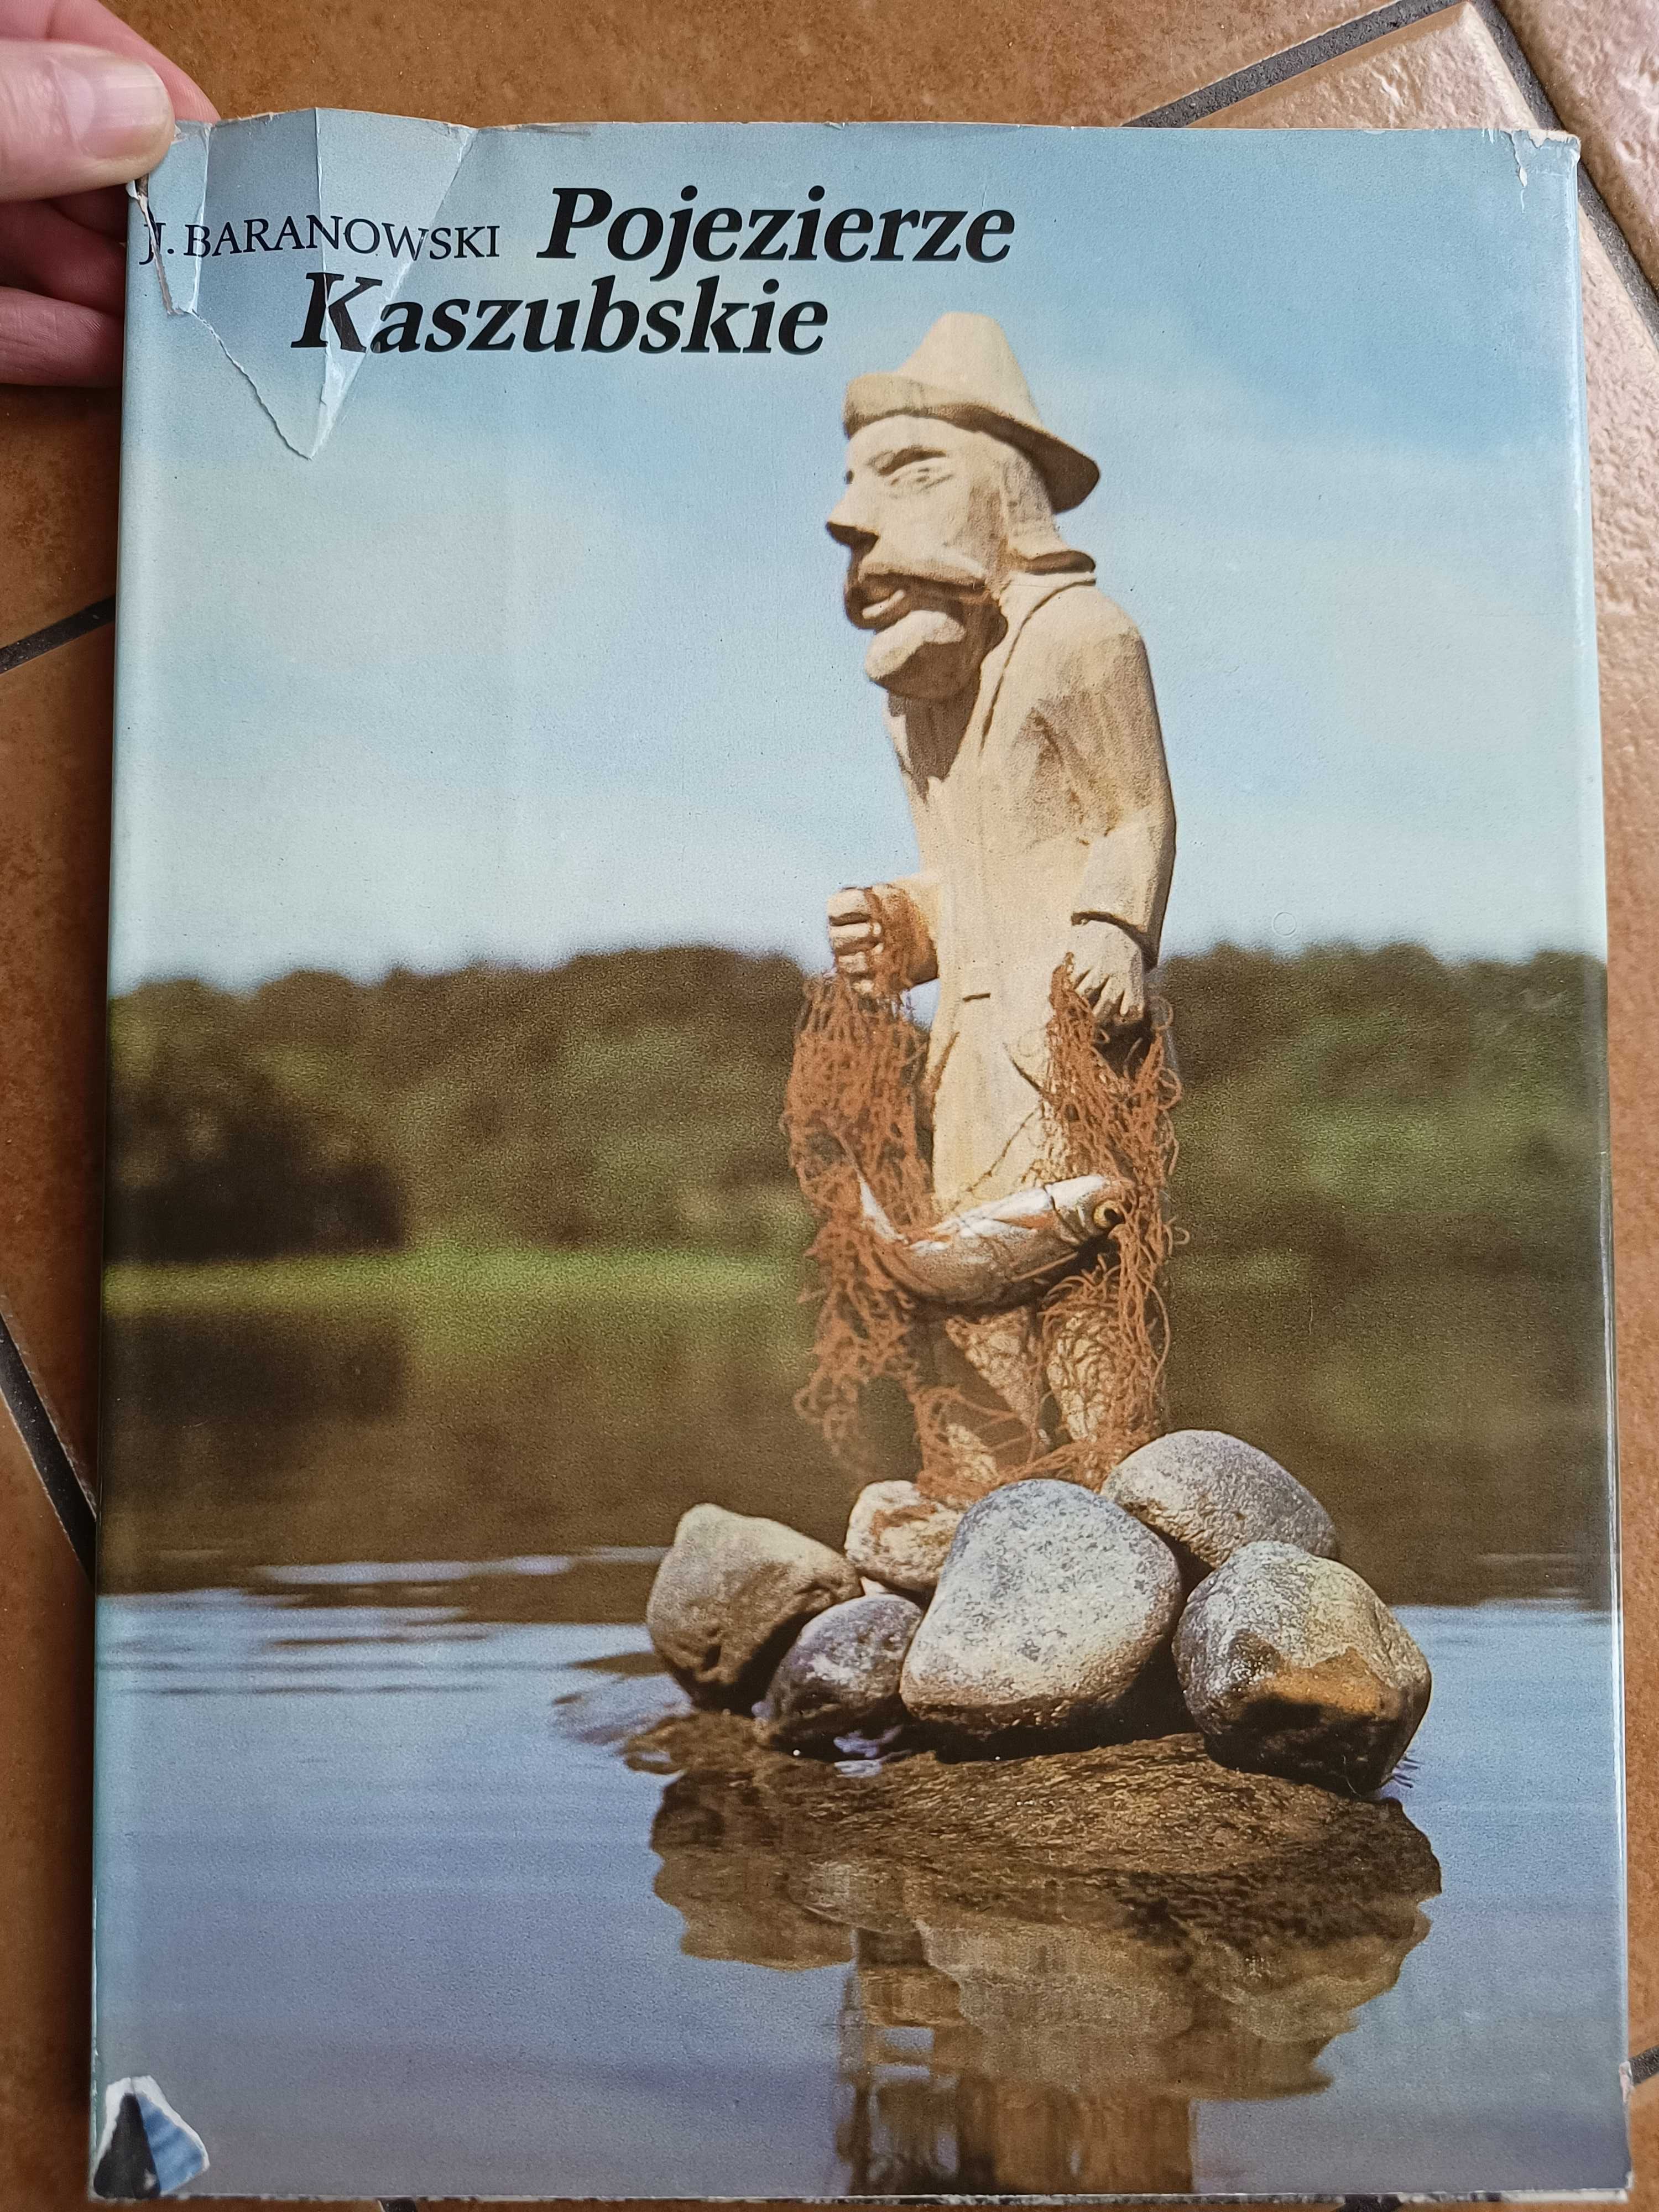 Album Pojezierze Kaszubskie - J. Baranowski